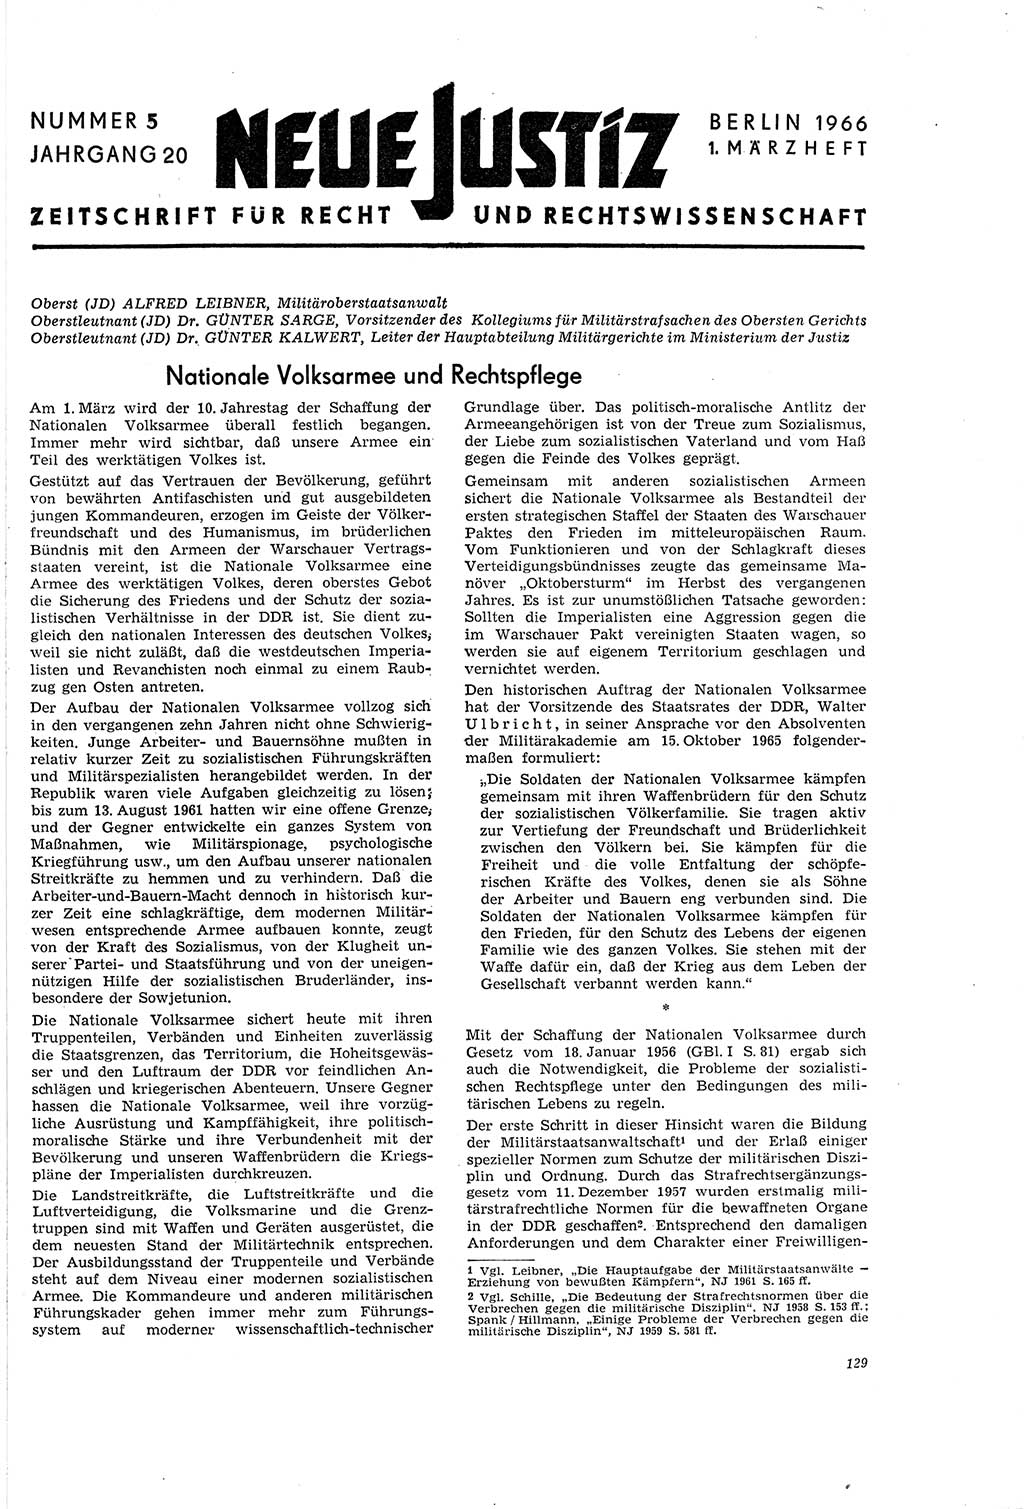 Neue Justiz (NJ), Zeitschrift für Recht und Rechtswissenschaft [Deutsche Demokratische Republik (DDR)], 20. Jahrgang 1966, Seite 129 (NJ DDR 1966, S. 129)